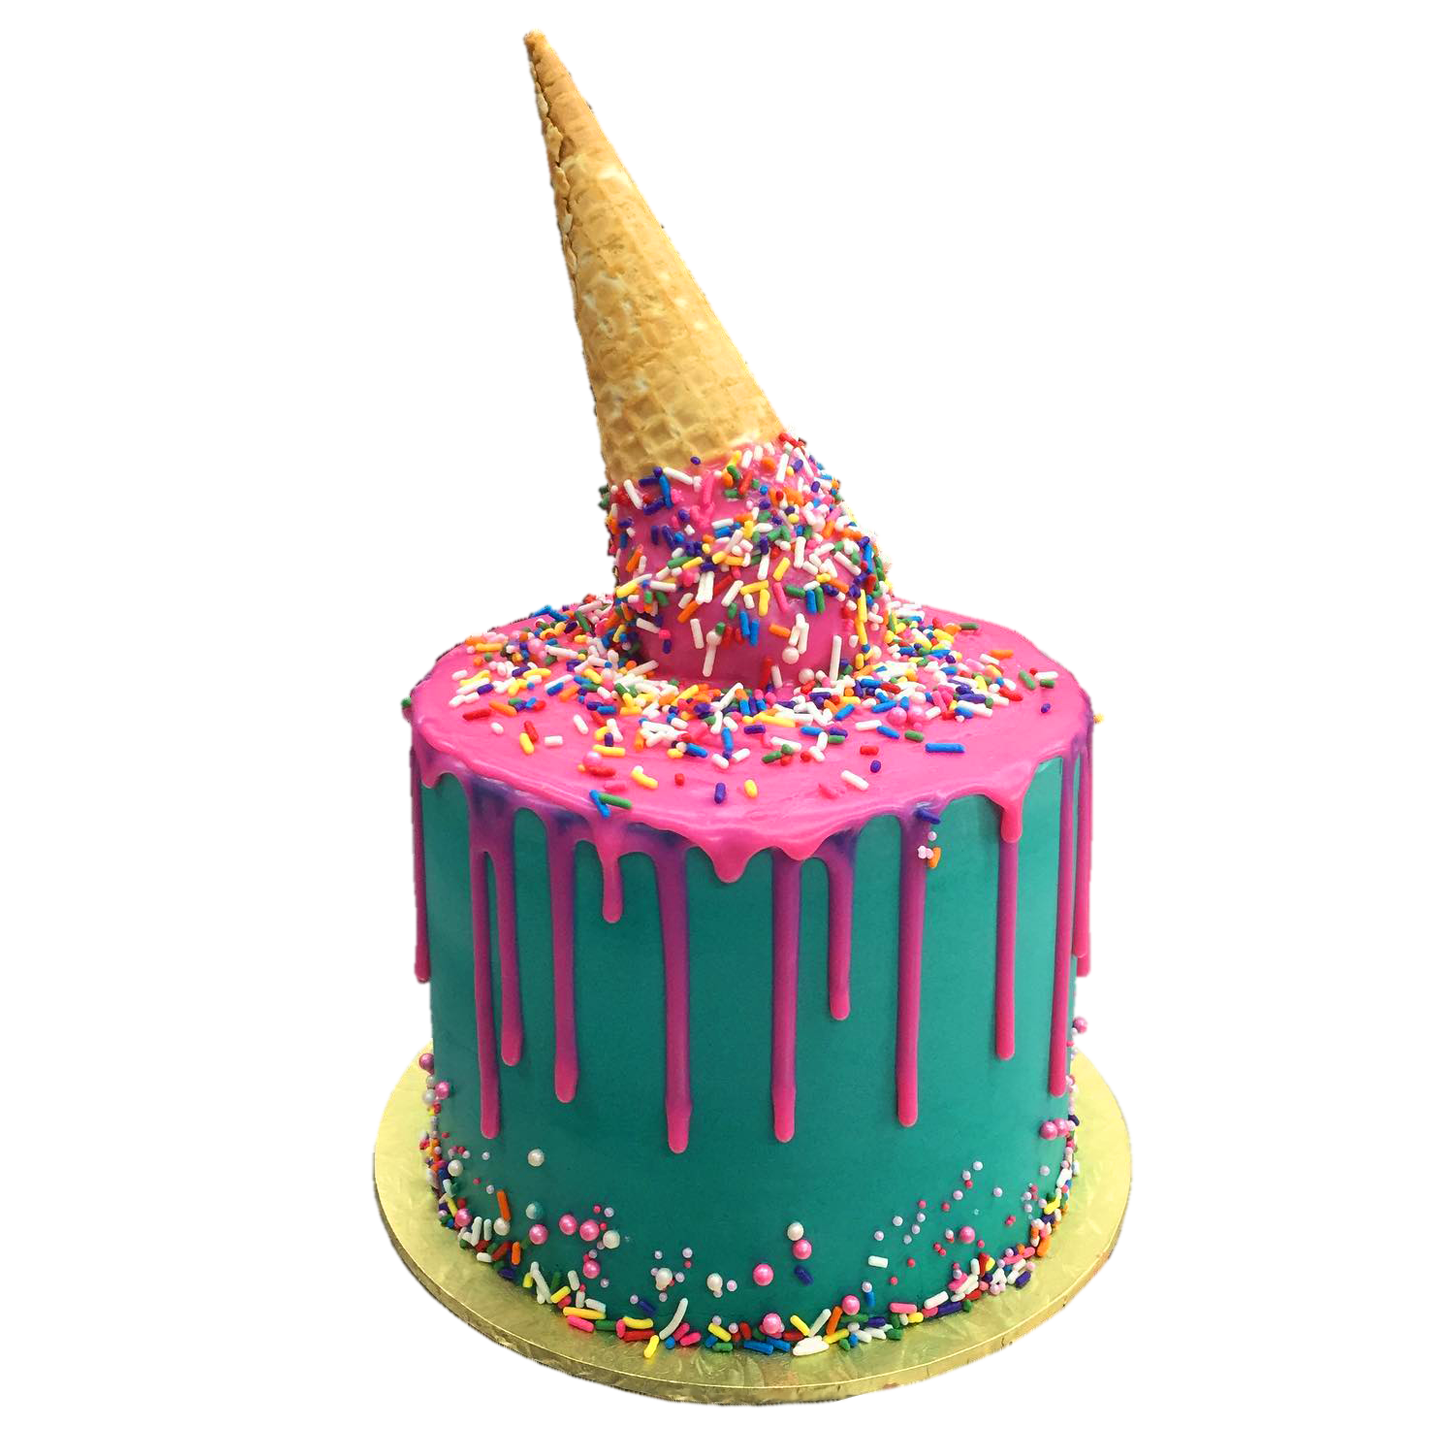 Ice cream Oopsie Cake